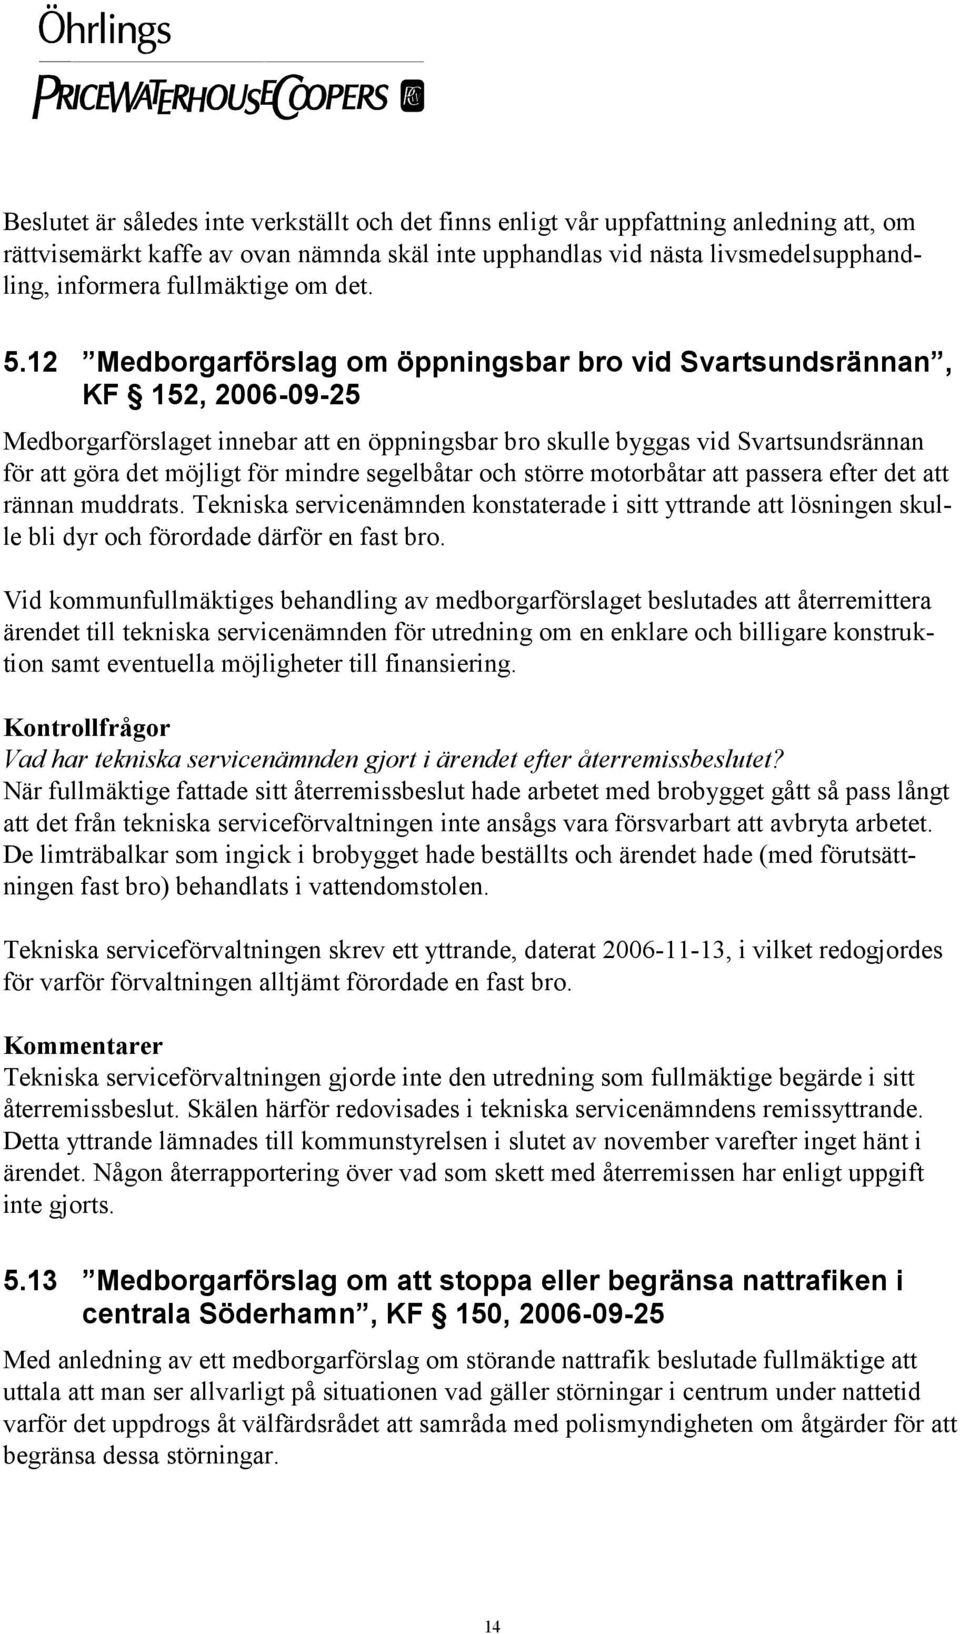 12 Medborgarförslag om öppningsbar bro vid Svartsundsrännan, KF 152, 2006-09-25 Medborgarförslaget innebar att en öppningsbar bro skulle byggas vid Svartsundsrännan för att göra det möjligt för